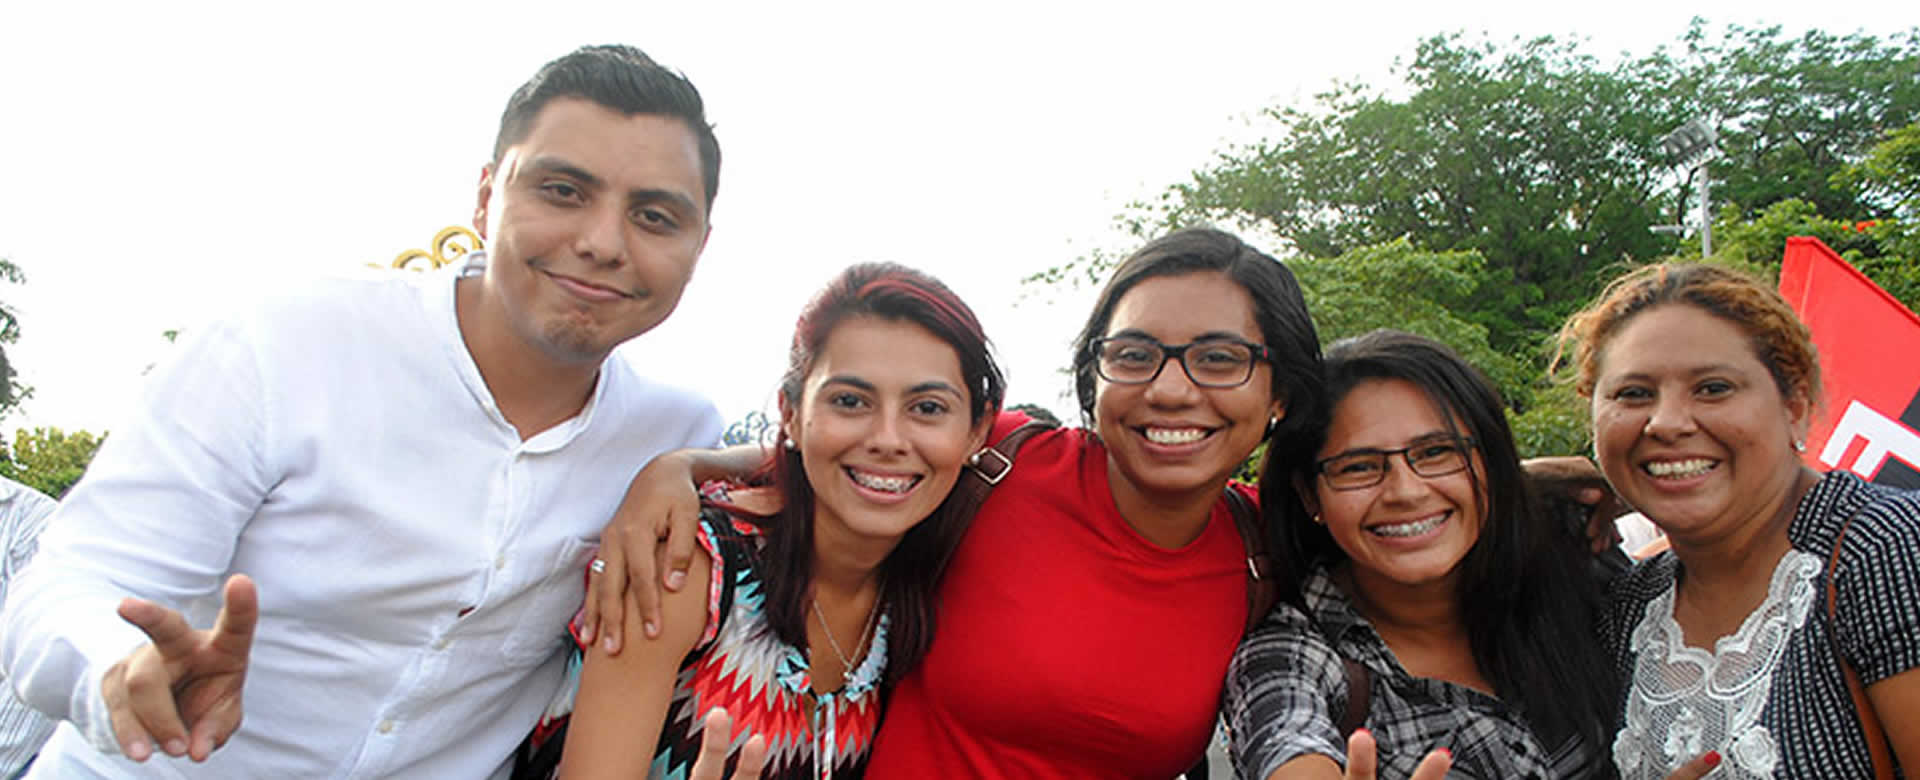 Familias quieren de vuelta la Nicaragua en paz, tranquilidad y progreso